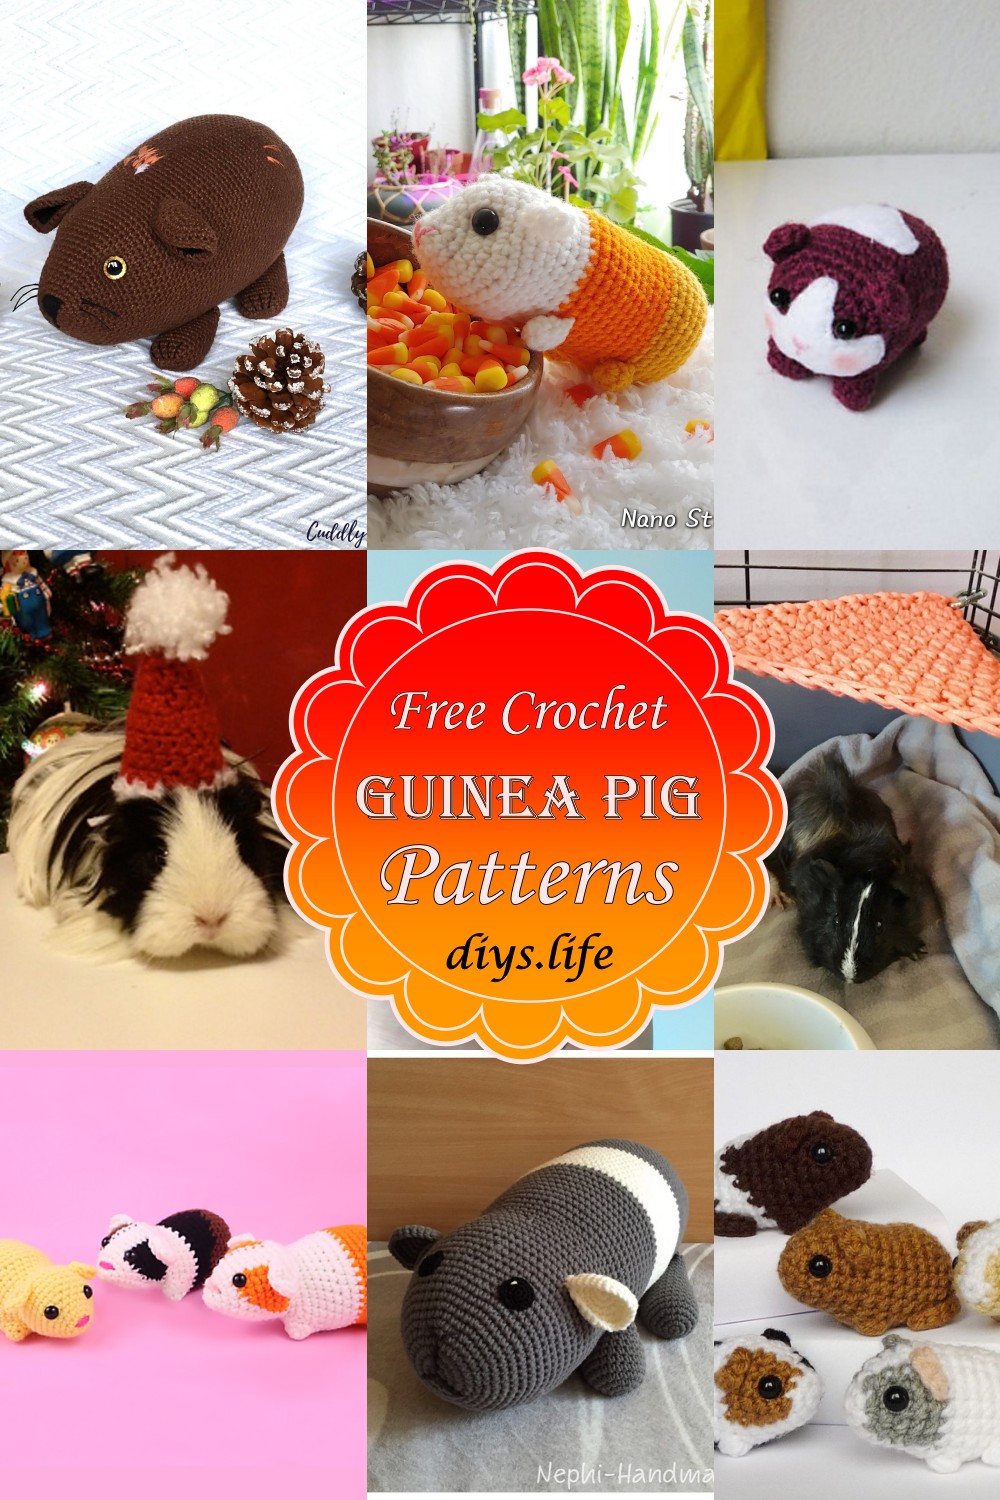 Crochet Guinea Pig Patterns